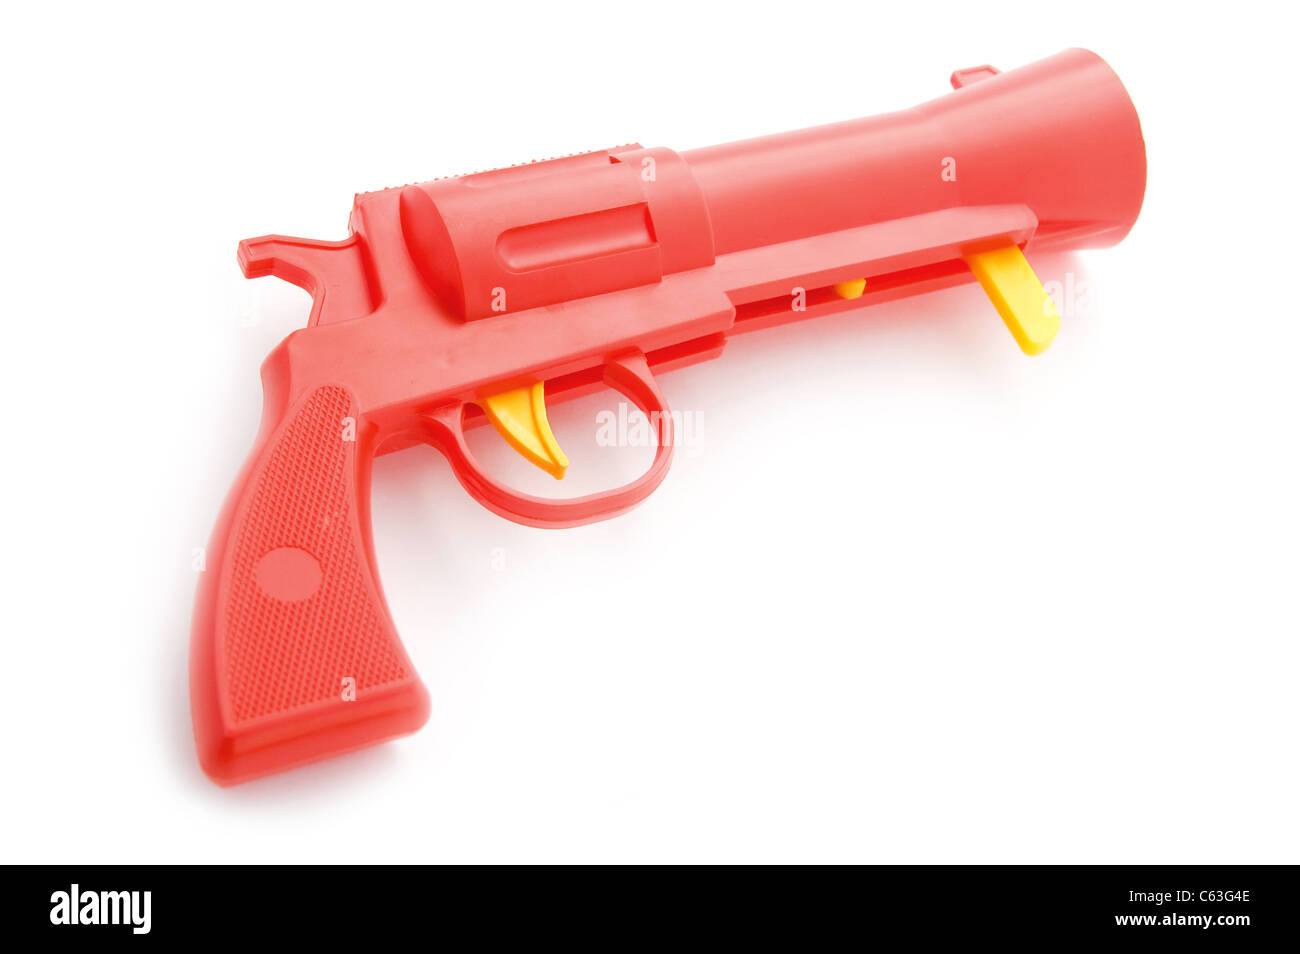 Objet sur blanc - pistolet jouet close up Banque D'Images